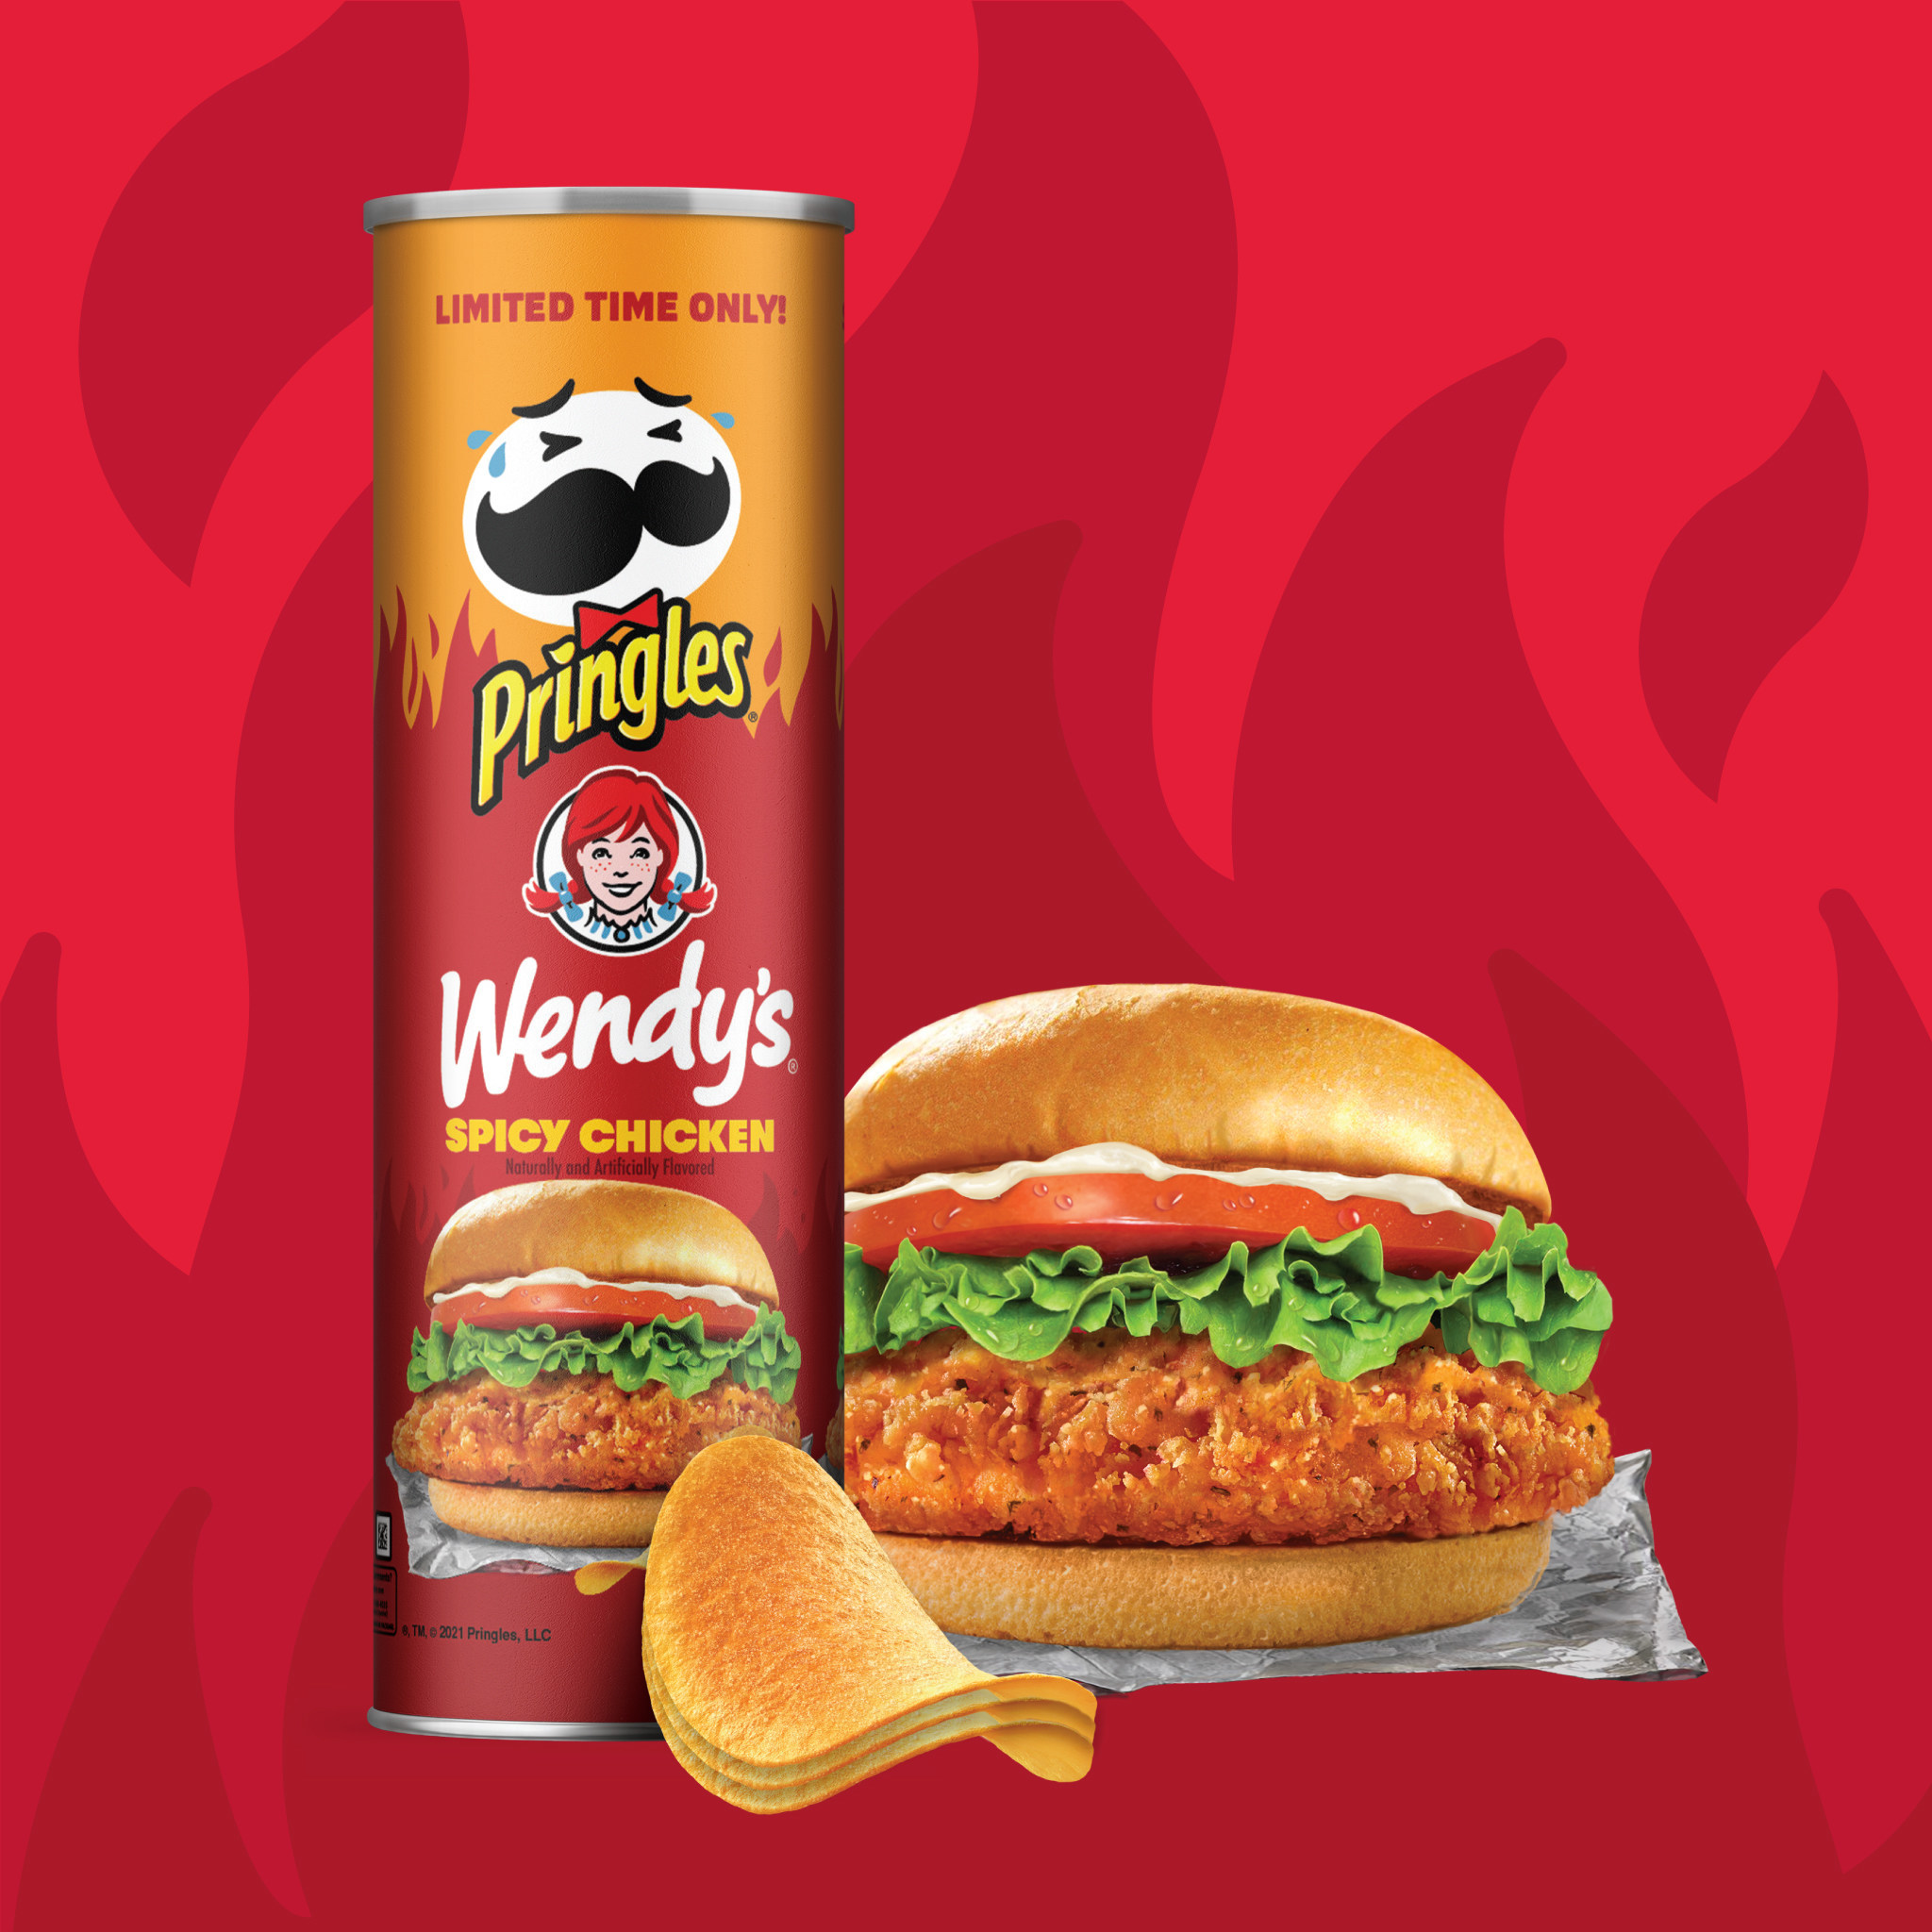 Pringles_Wendys_Spicy_Chicken_Media_Image.jpg